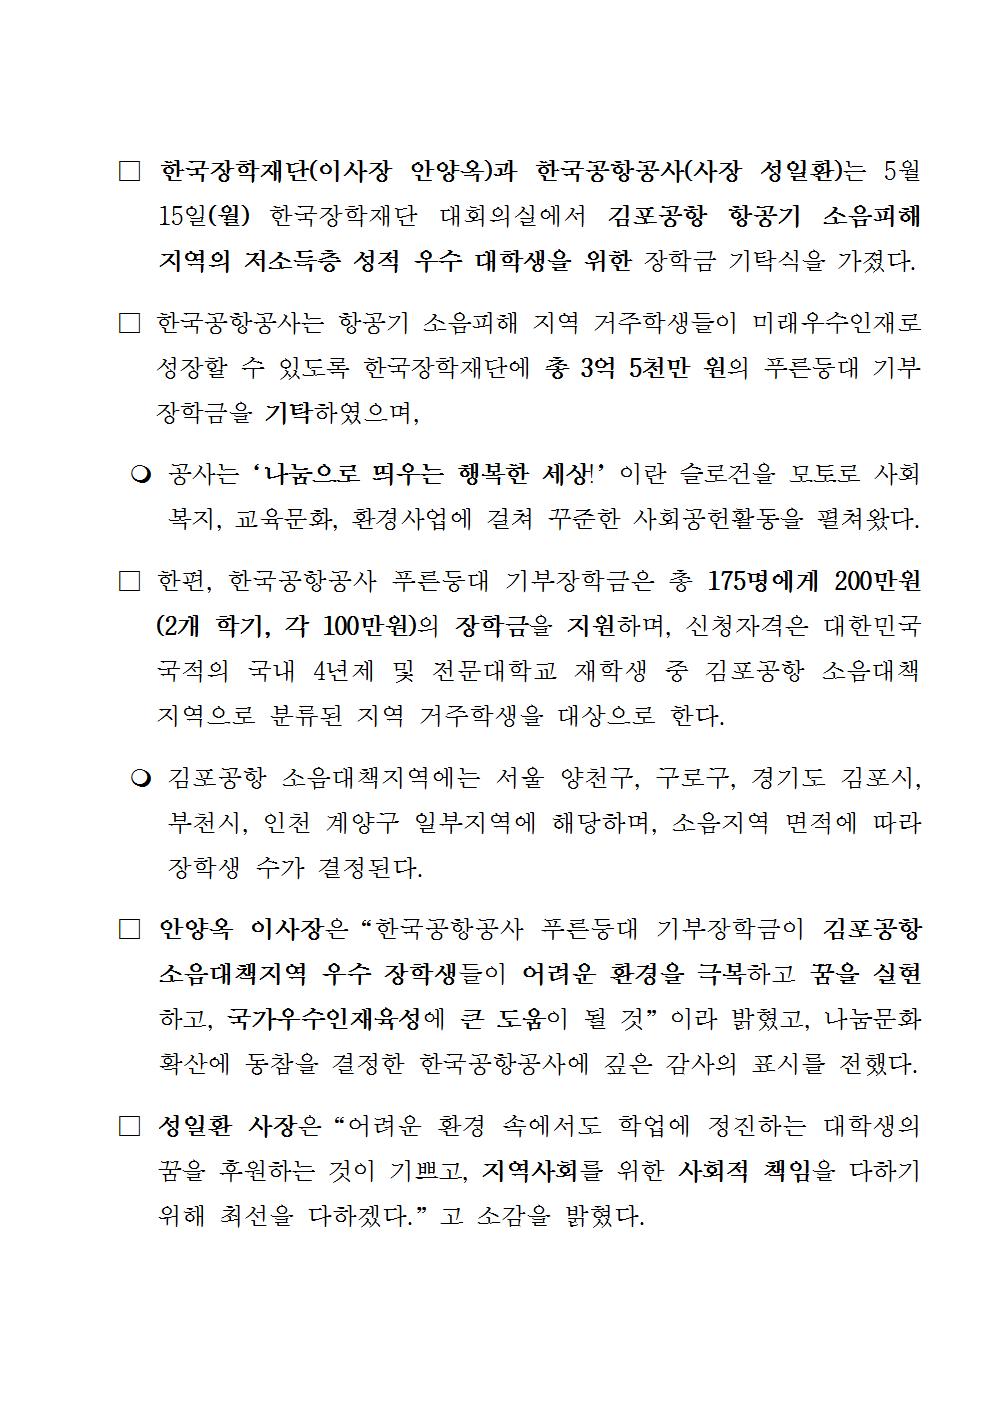 05-15(월)[보도자료] 한국장학재단-한국공항공사, 푸른등대 기부장학금 기탁식 개최002.jpg